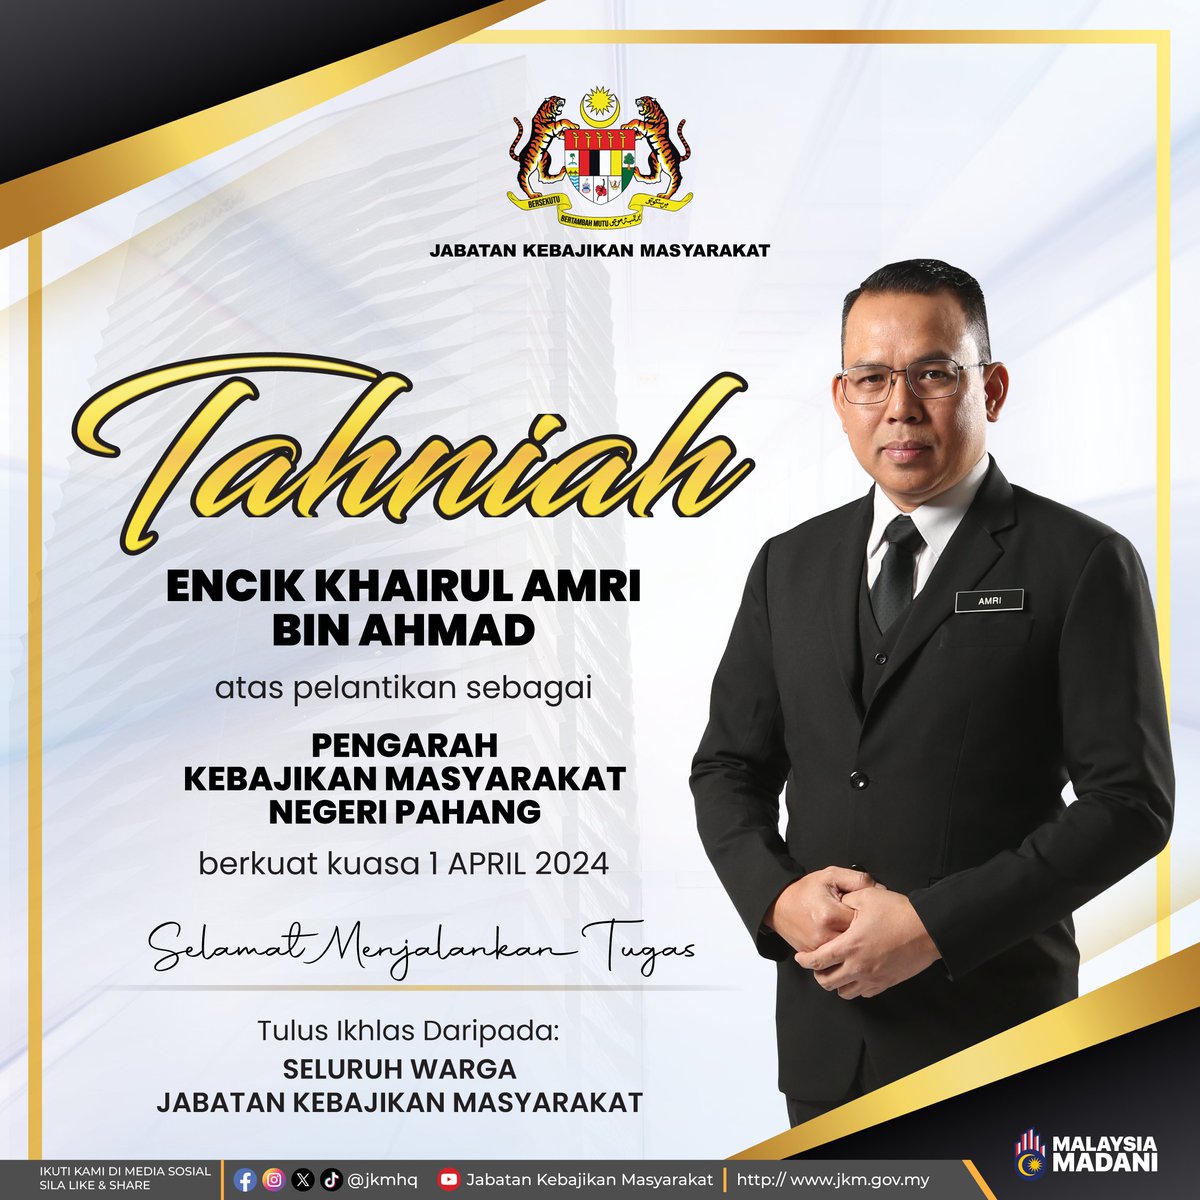 Seluruh Warga JKM merakamkan ucapan tahniah buat YBrs. Encik Khairul Amri bin Ahmad atas pelantikan sebagai Pengarah Kebajikan Masyarakat Negeri Pahang, Jabatan Kebajikan Masyarakat berkuatkuasa 1 April 2024. SELAMAT MAJU JAYA !!